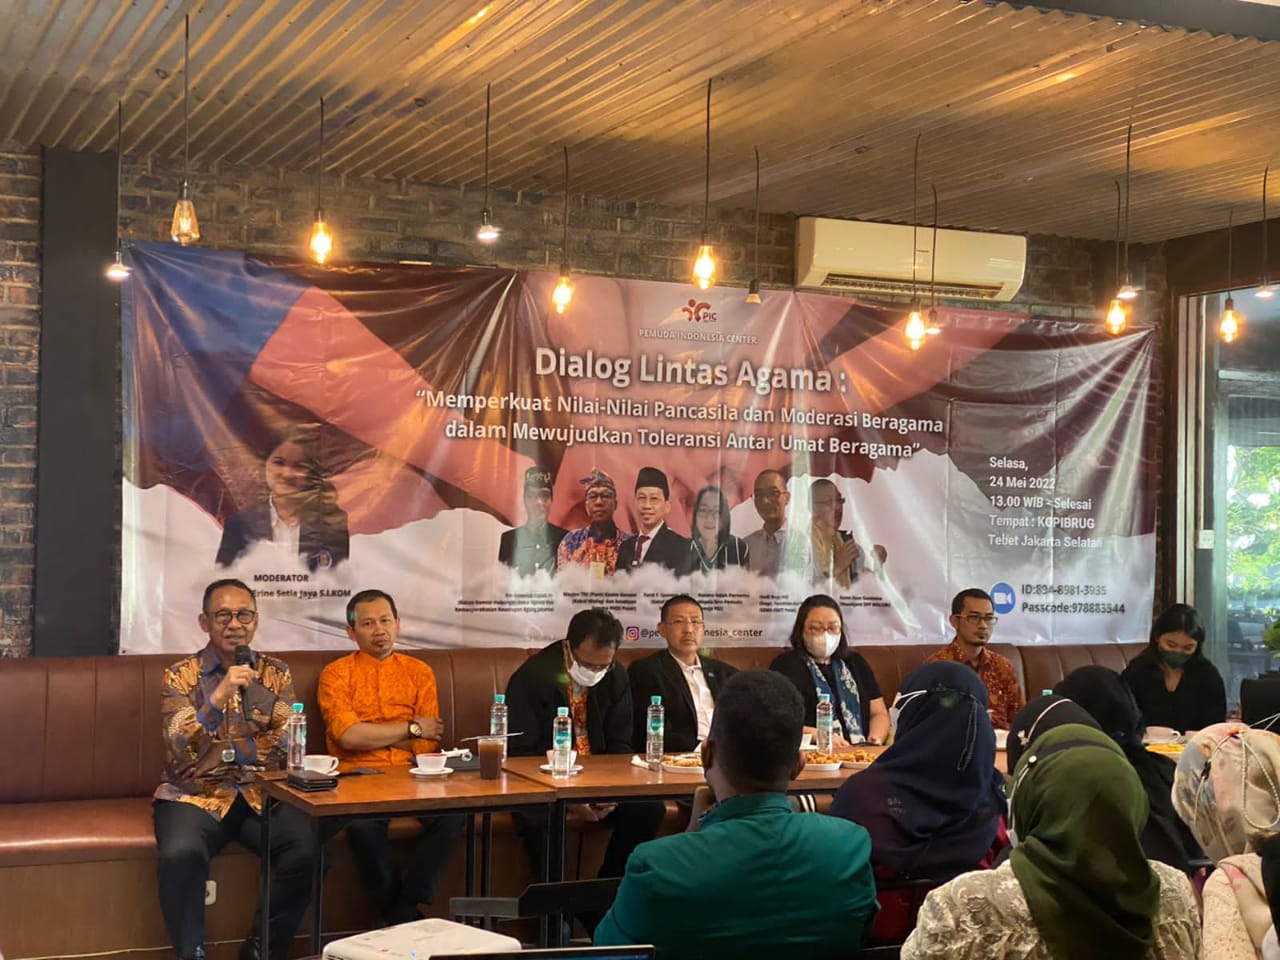 Pertemuan Pemuda Bahas Dialog Lintas Agama, PIC: Upaya Menjaga Nilai-Nilai Pancasila di Indonesia